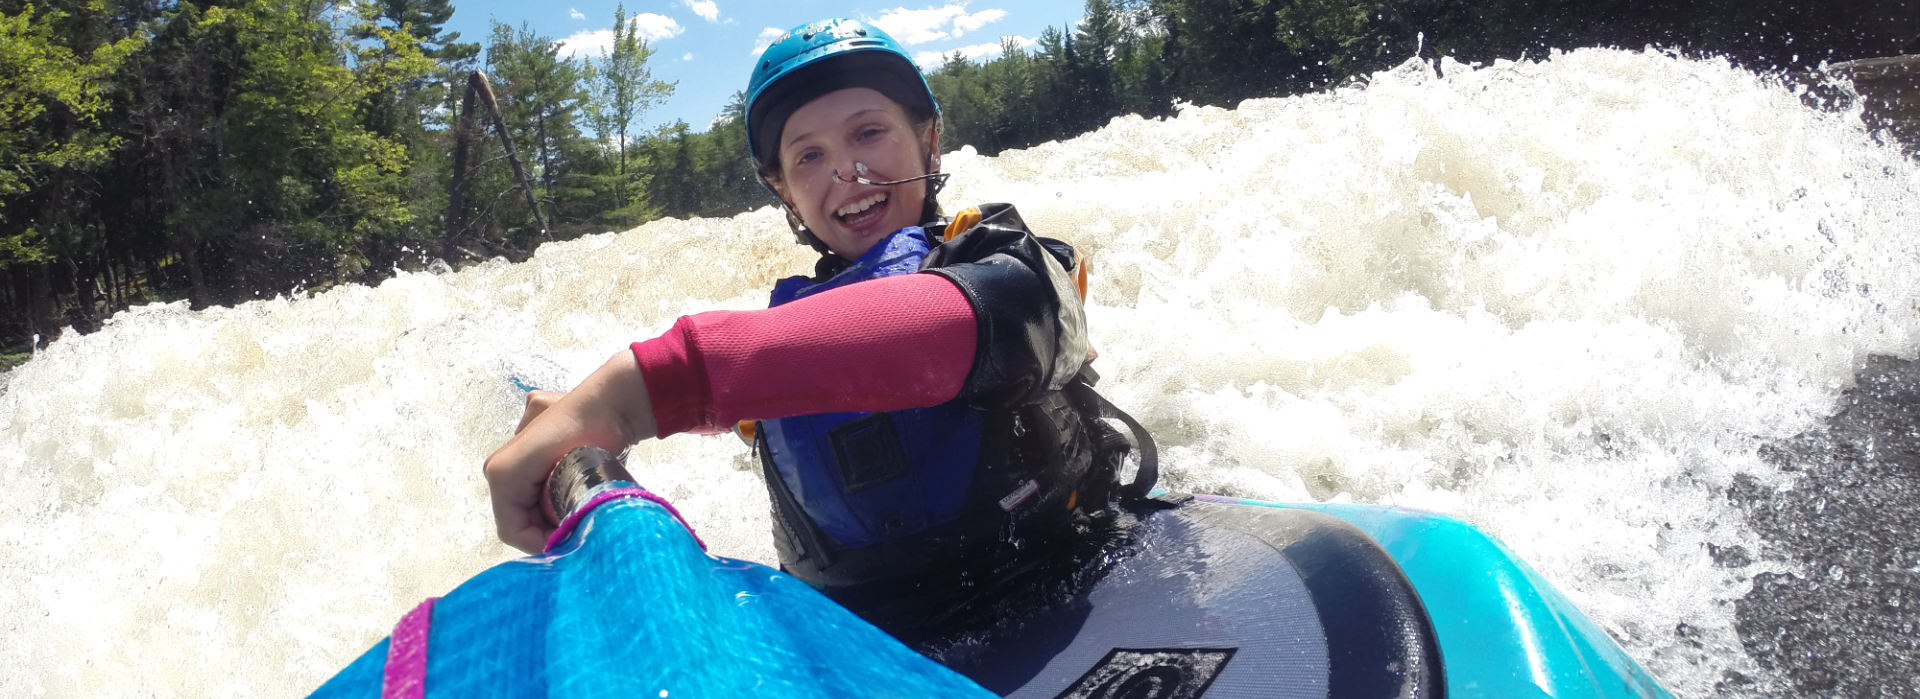 Lil Rippers Ottawa Kayak School